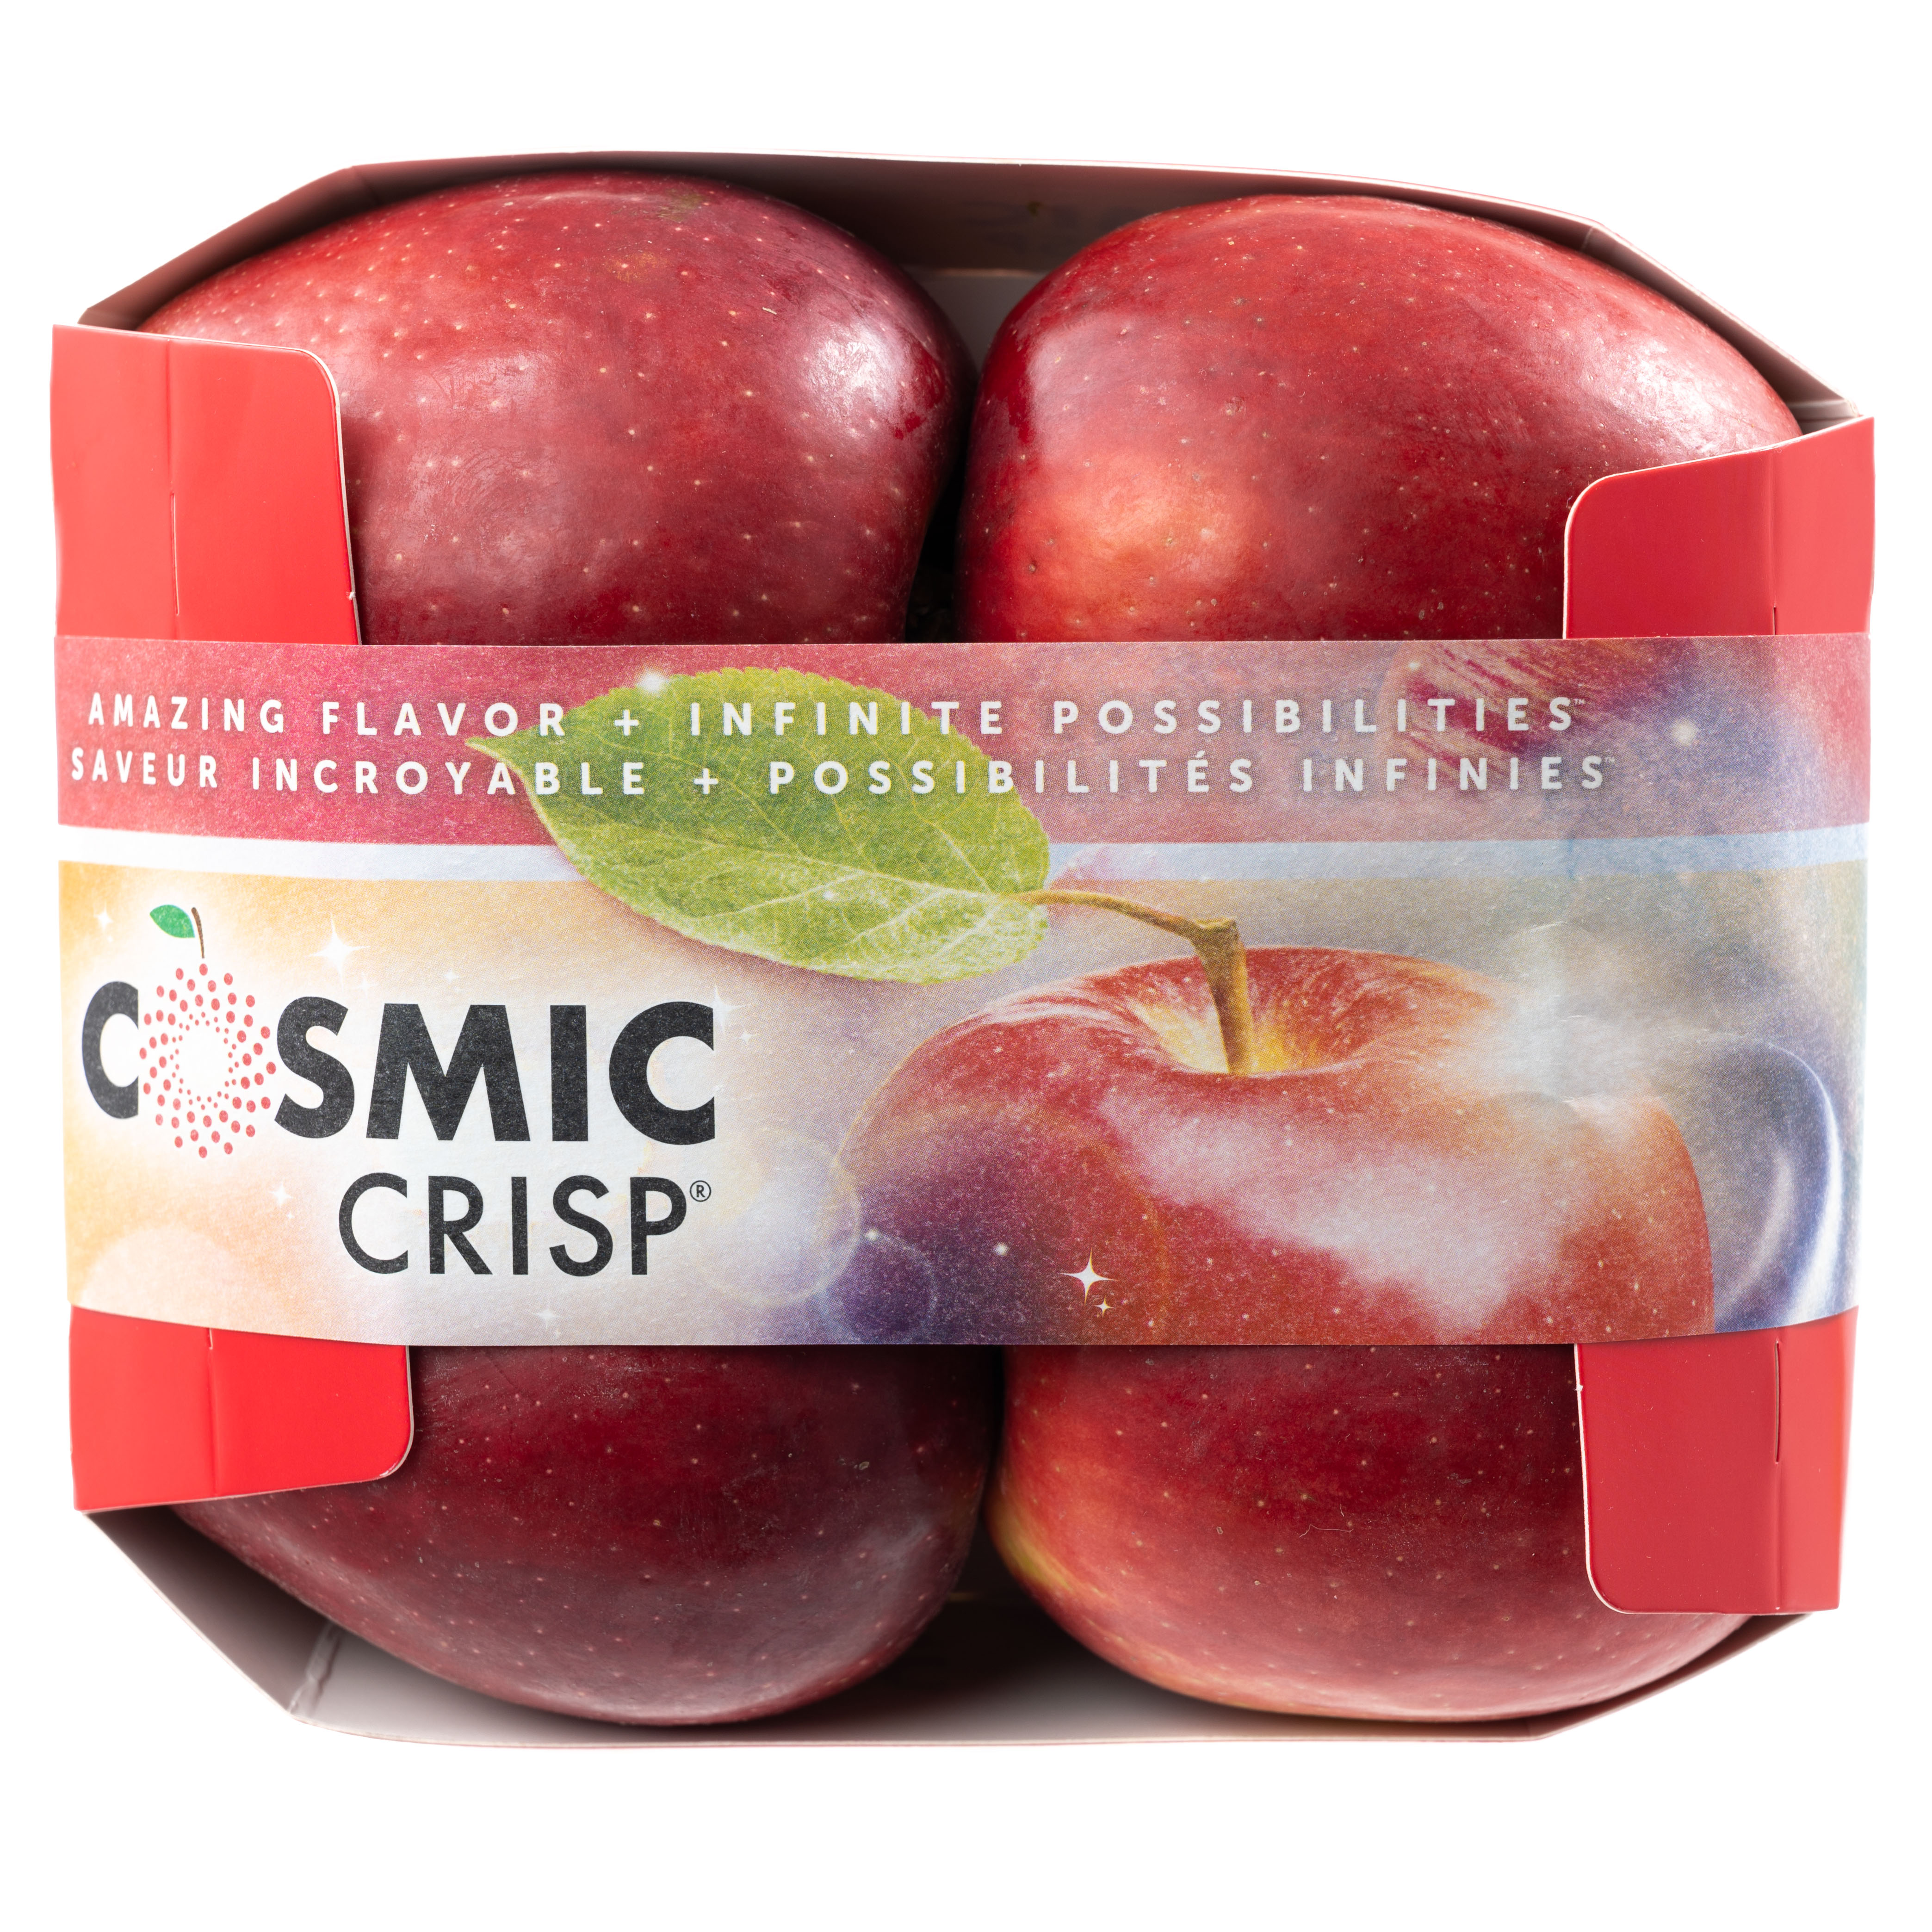 Cosmic Crisp Archives - Stemilt Core